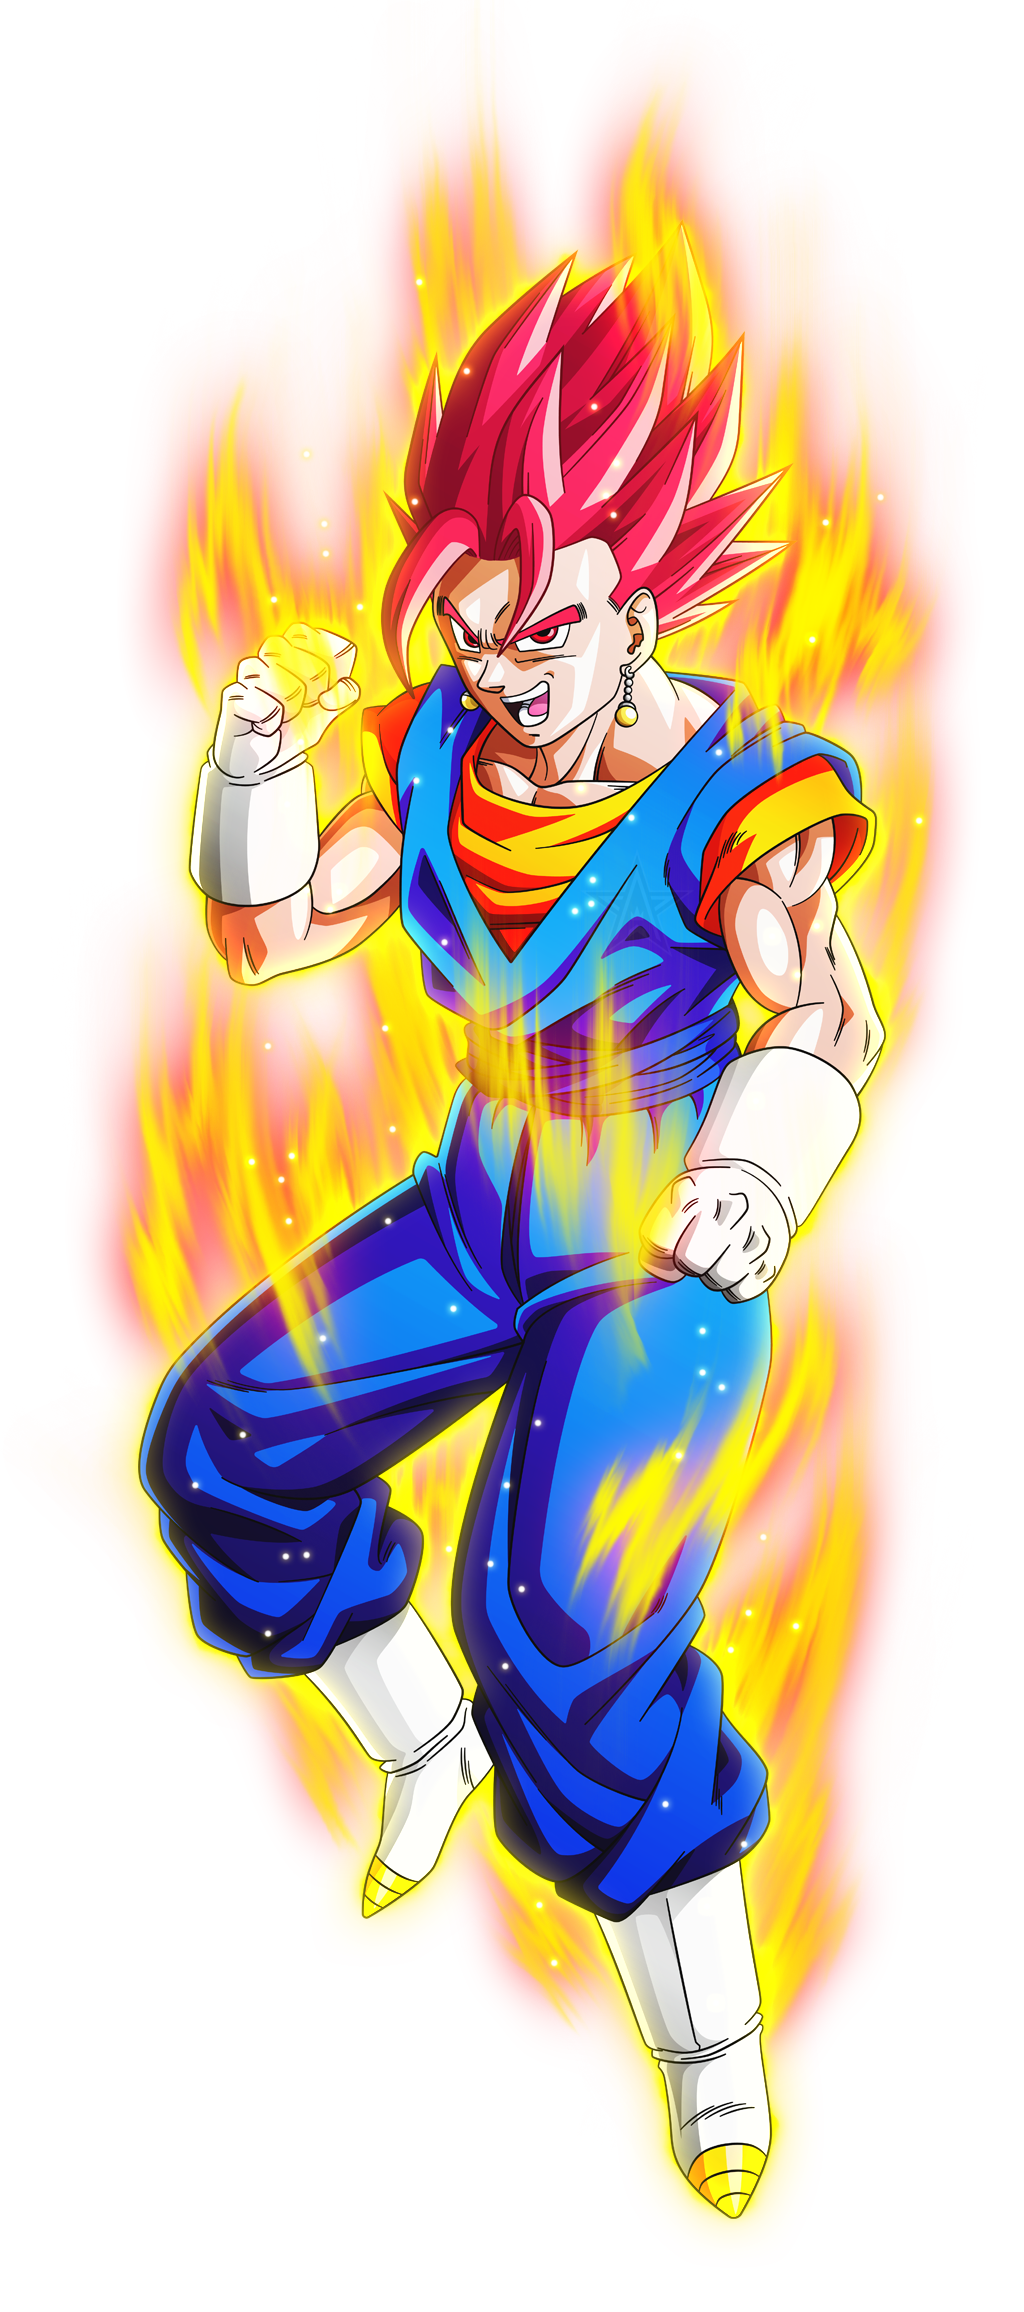 Super Saiyan Blue Goku by AubreiPrince on DeviantArt